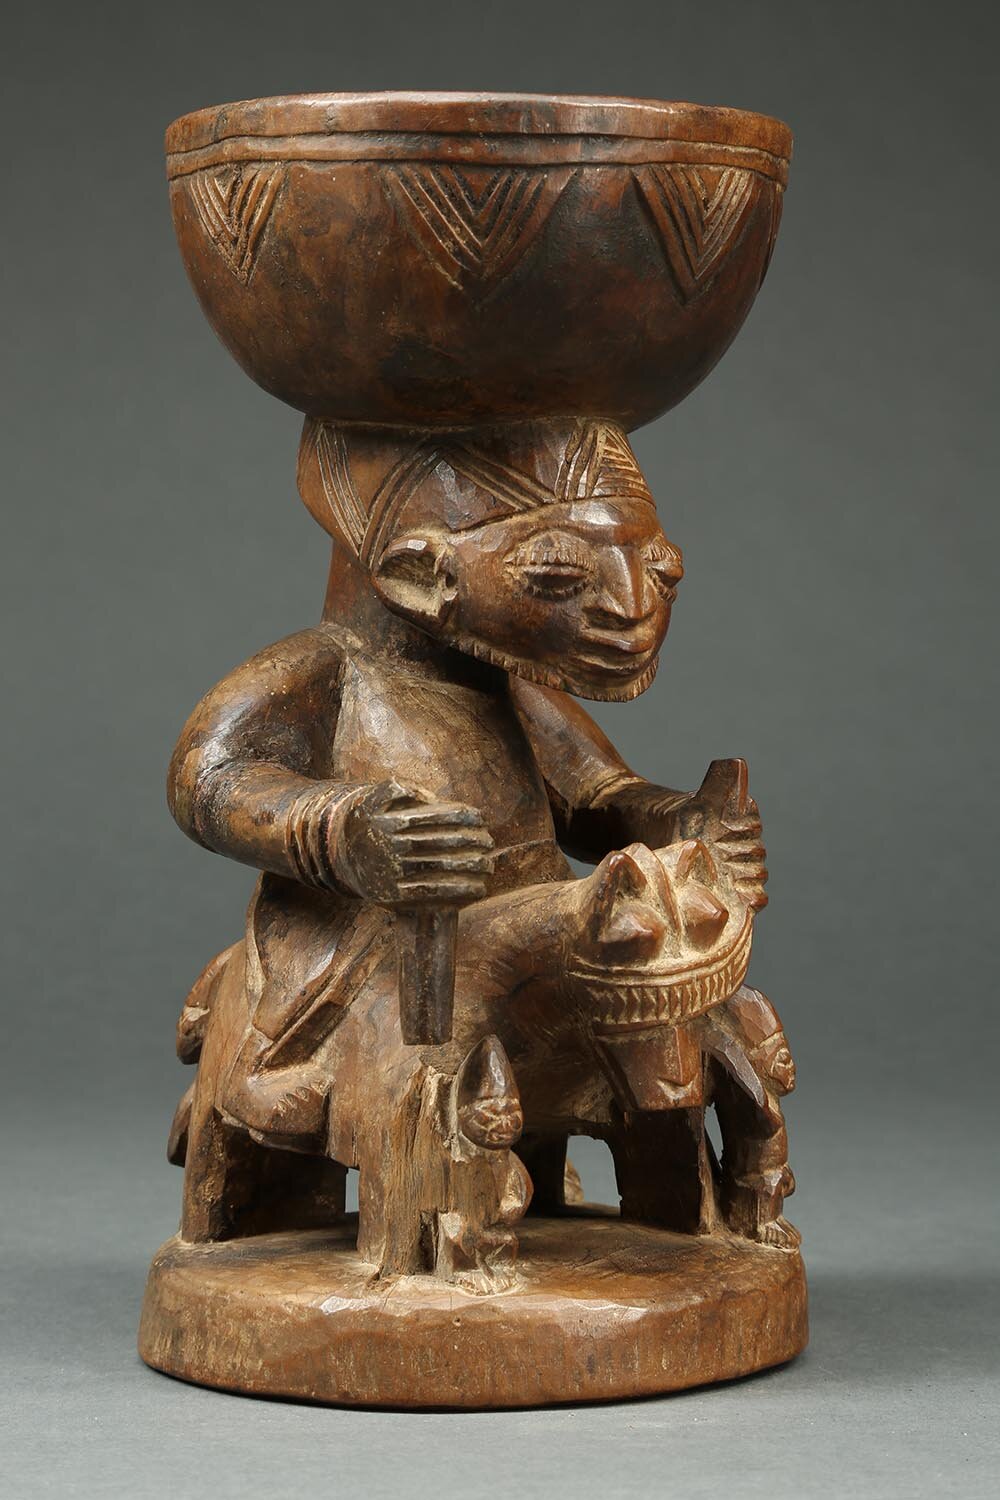 Yoruba Bowl with rider